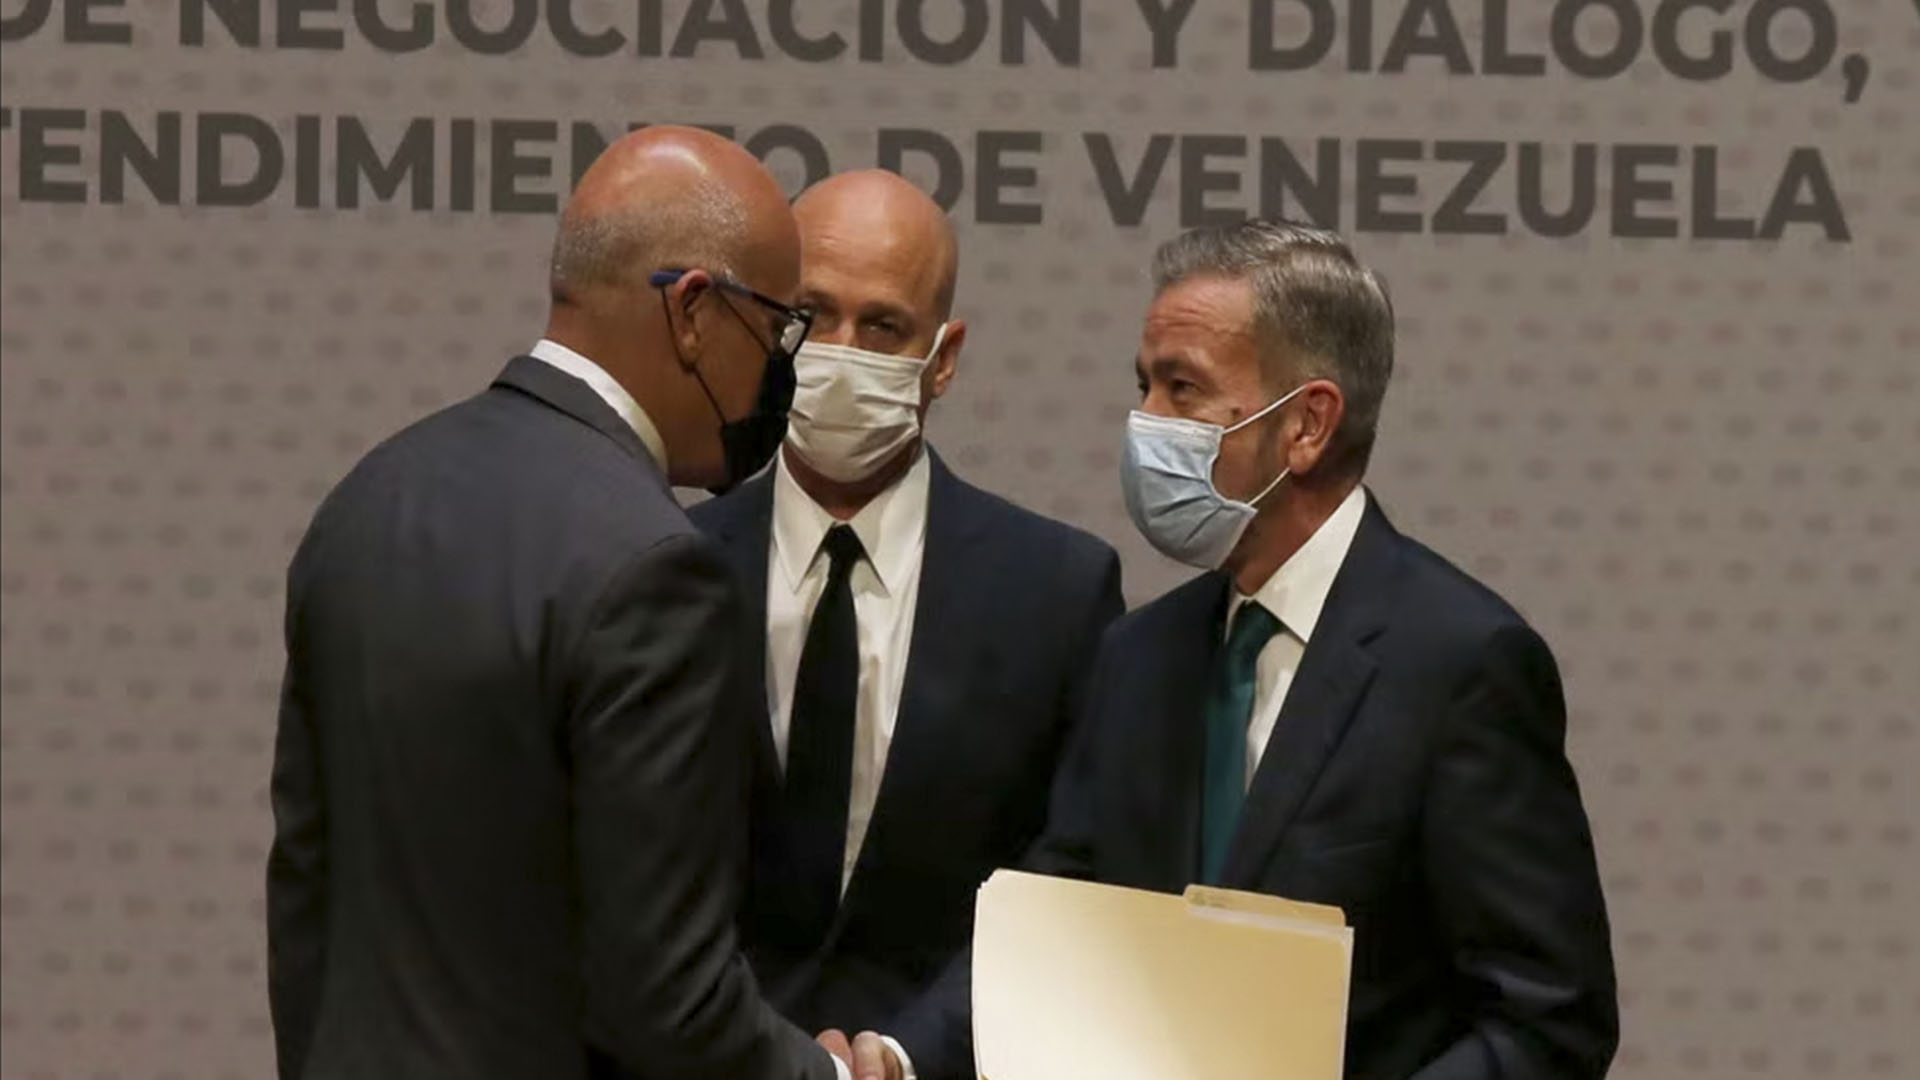 España: La negociación es la única solución posible para Venezuela